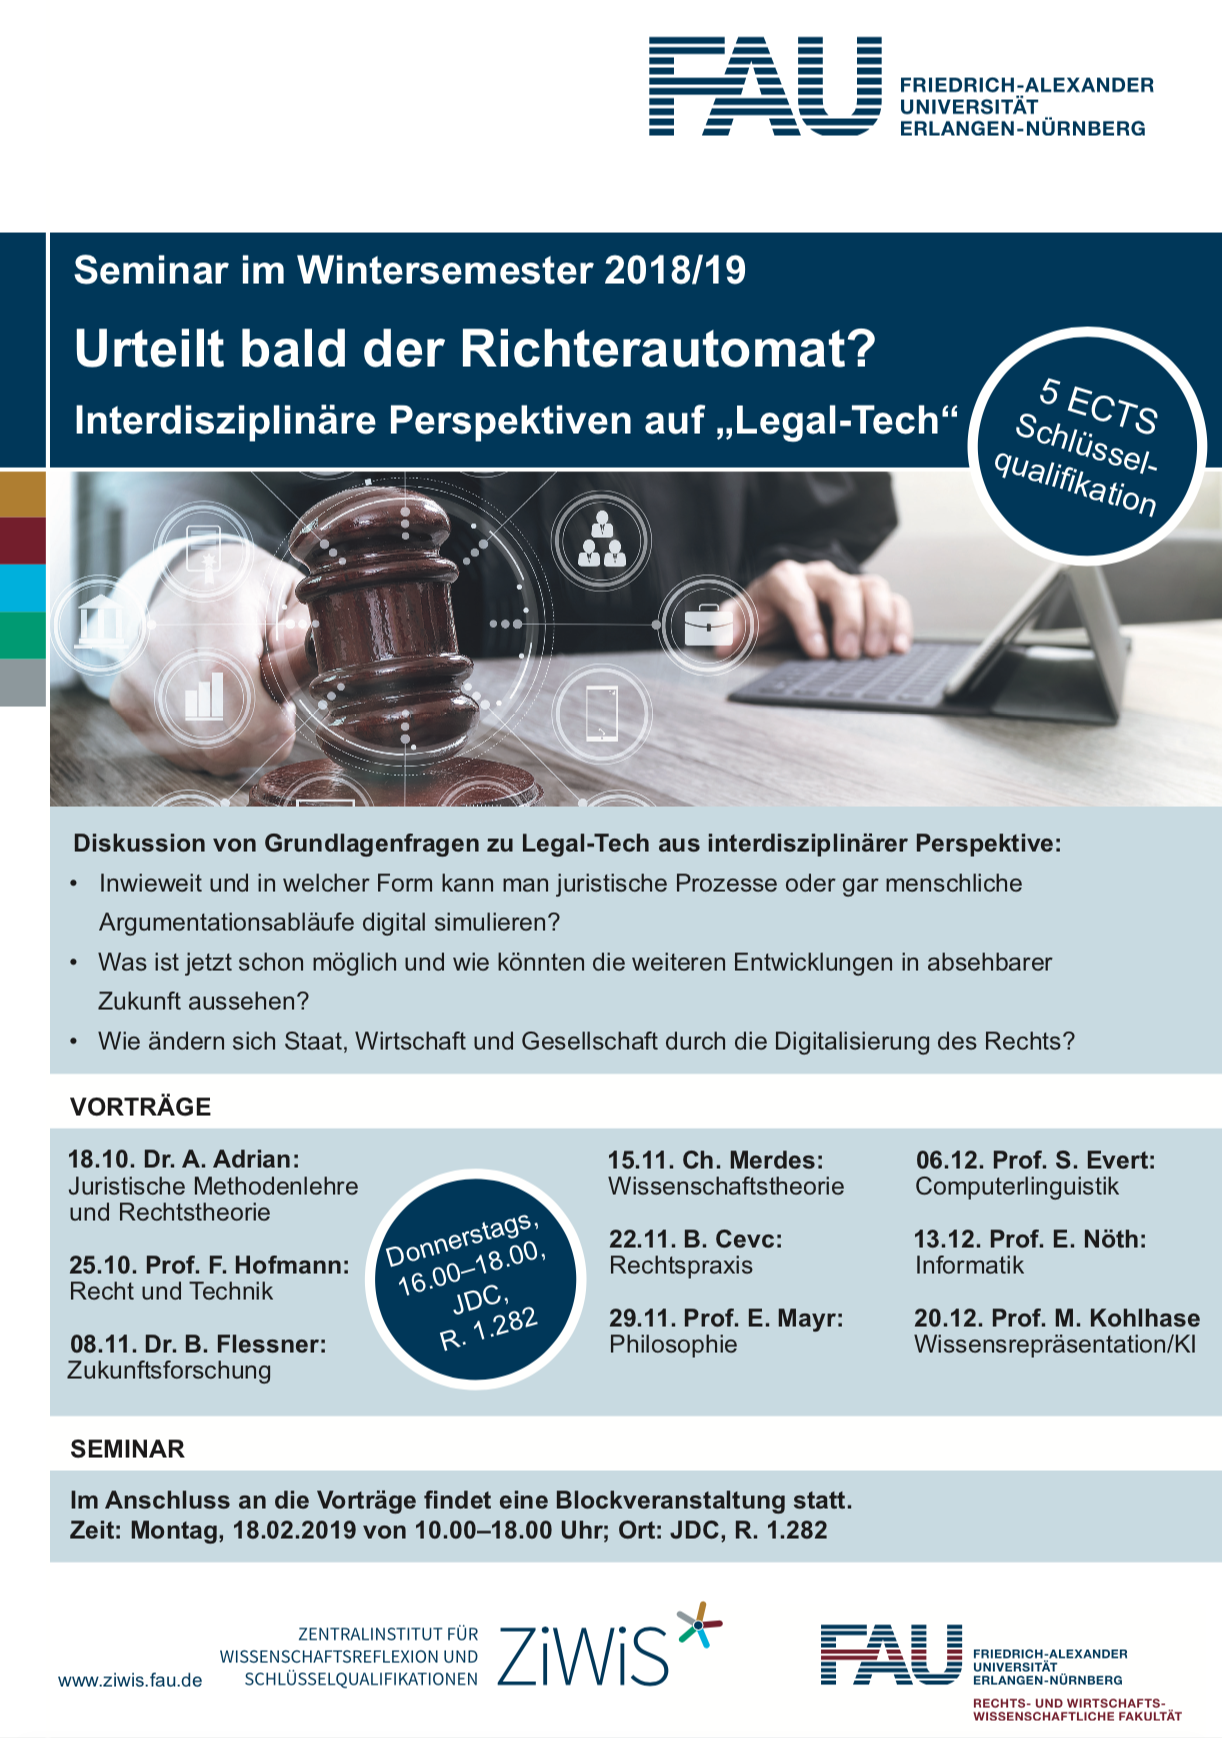 Zum Artikel "Automatisierte Rechtsprechung? Interdisziplinäres Seminar zu „Legal Tech“"